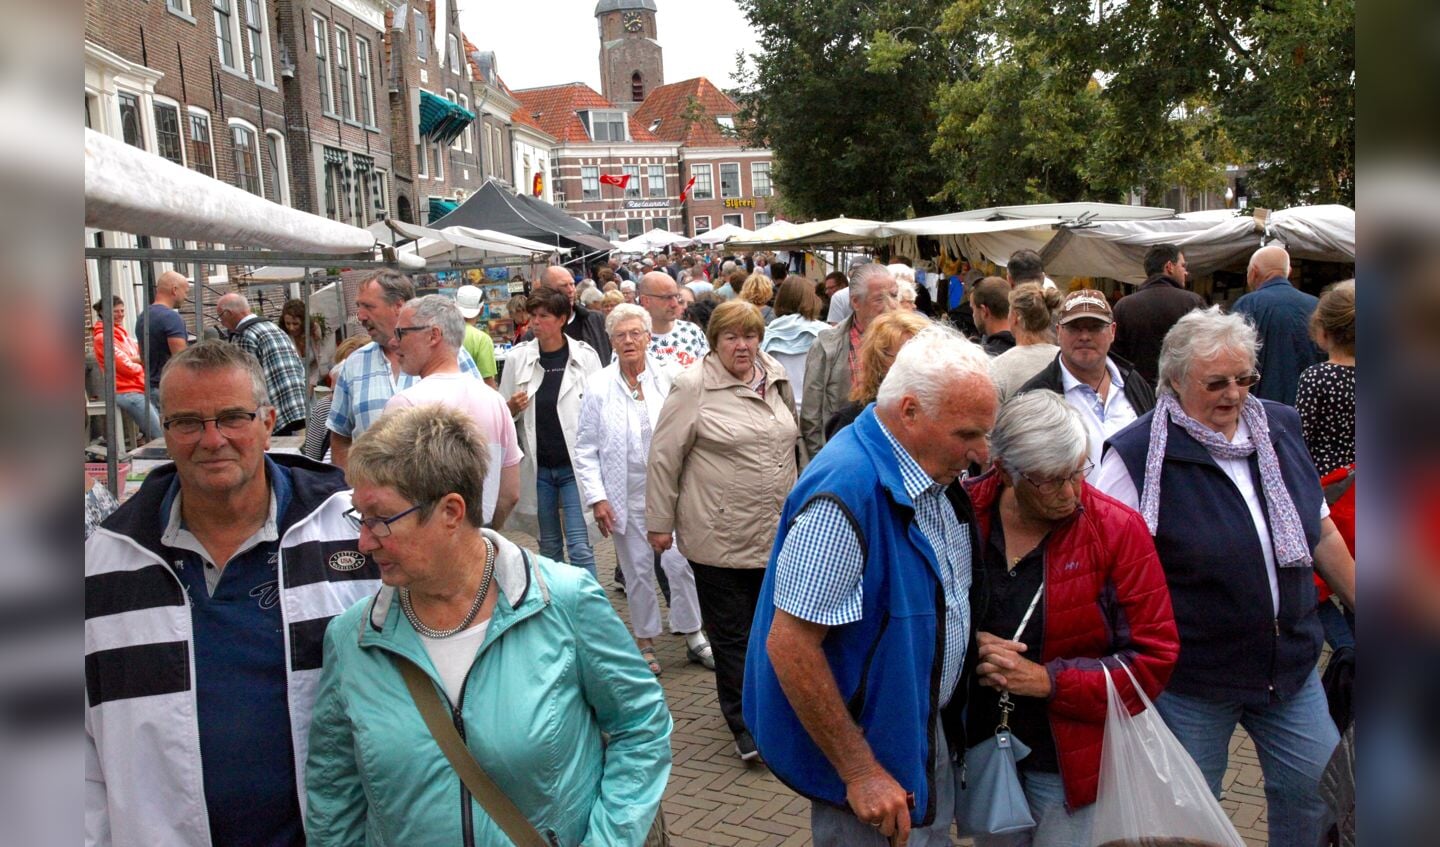 De jaarmarkt in Blokzijl is zowel aantrekkelijk voor bezoekers als voor standhouders, vanwege de grote variatie aan kramen.
